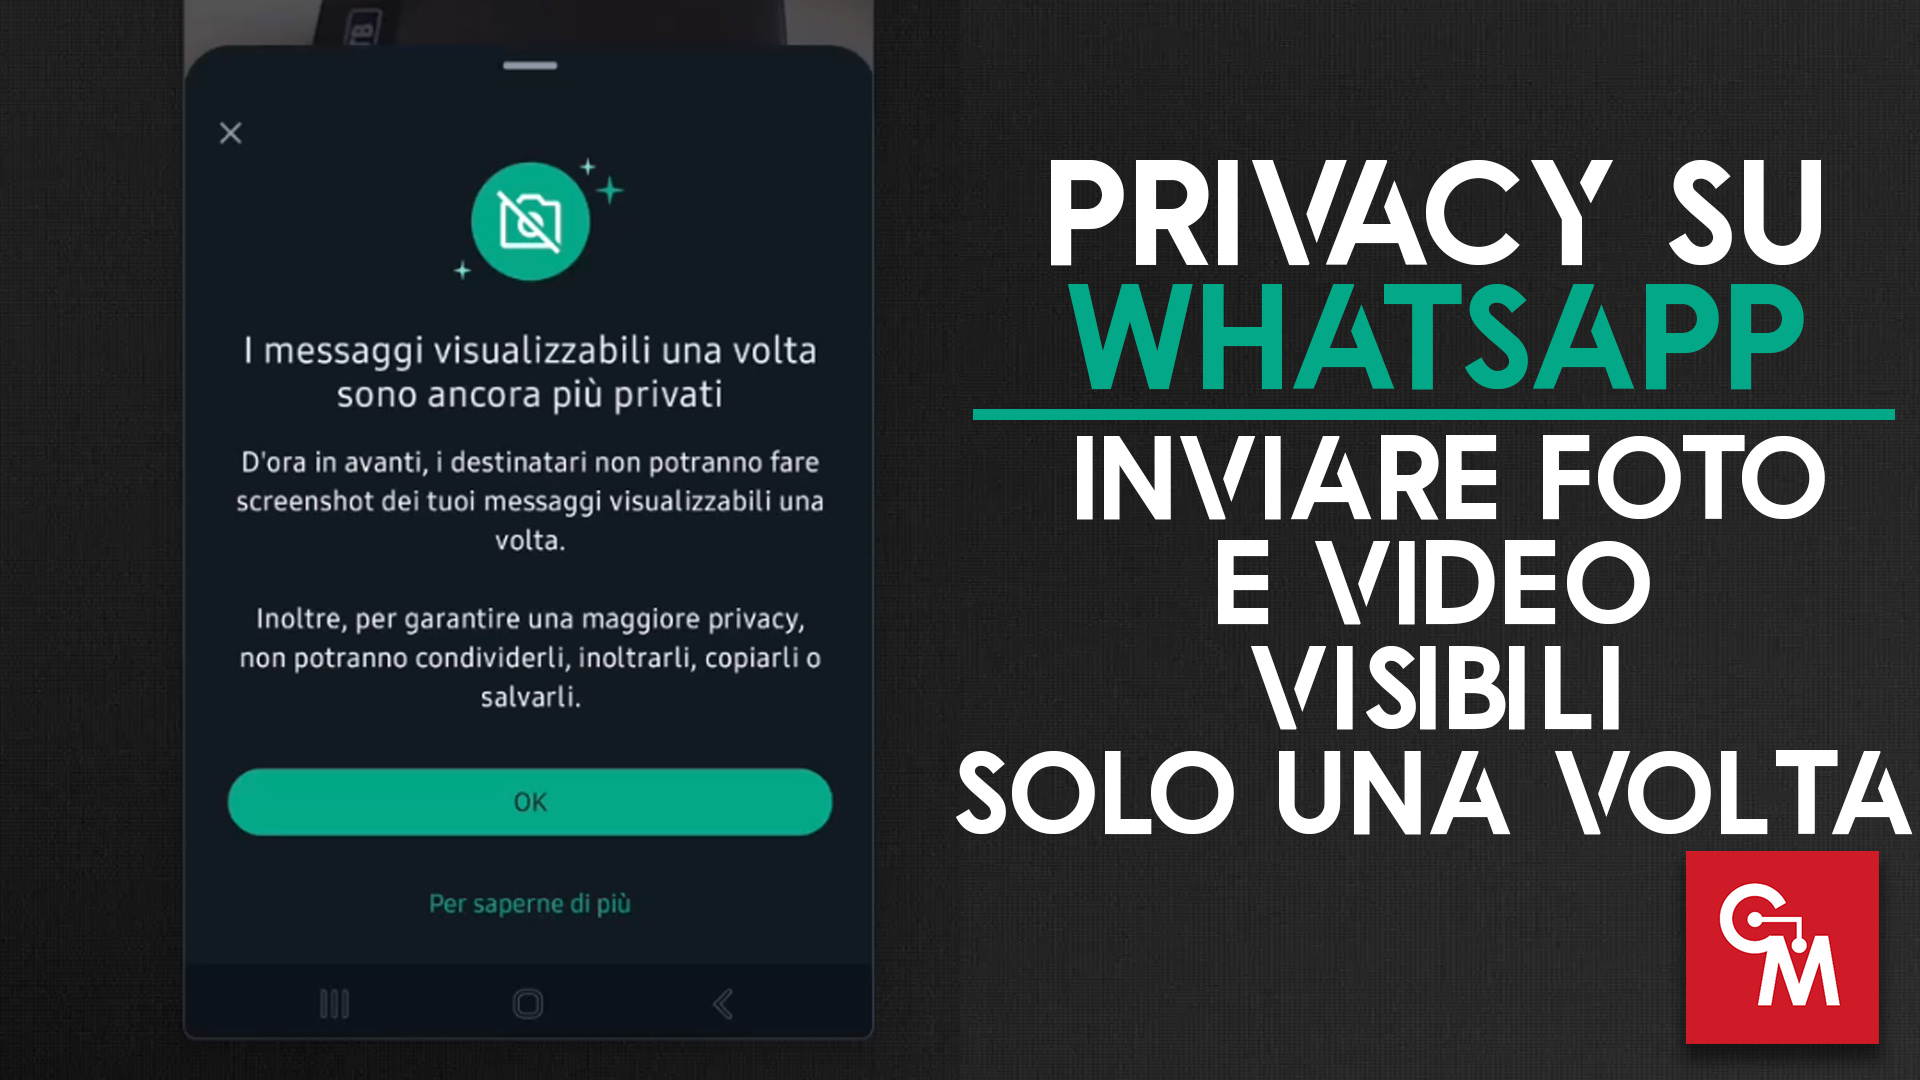 Privacy su WhatsApp: foto e video visibili solo una volta. Ecco come!